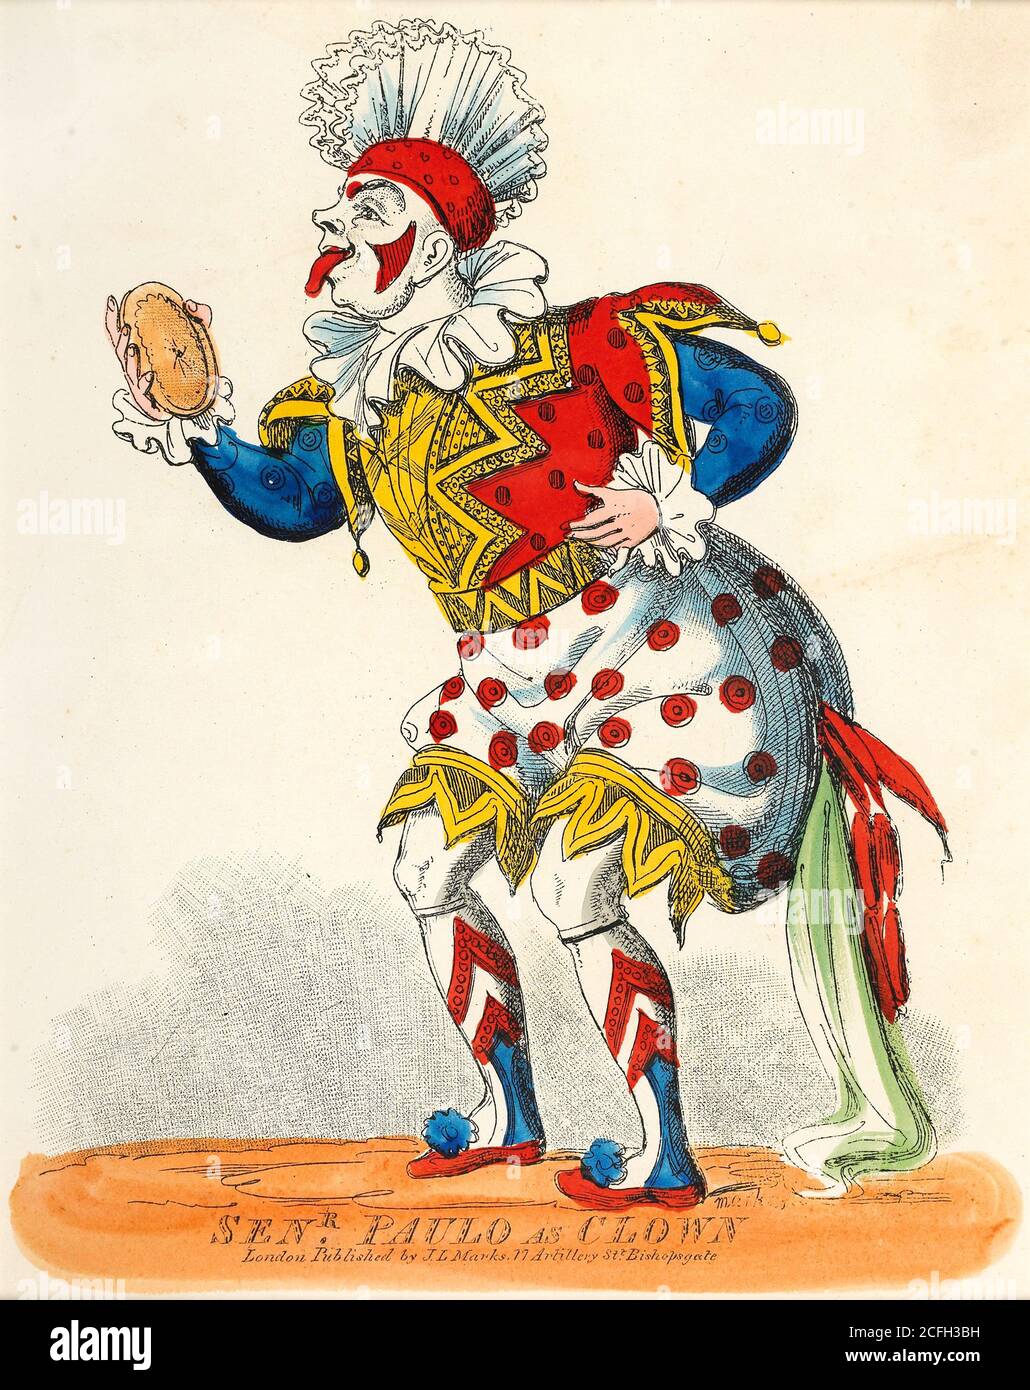 Marks, J.L., Portrait théâtral, Senr Paulo as Clown, Circa 1822-1839, Print, Musée de Londres, Angleterre. Banque D'Images